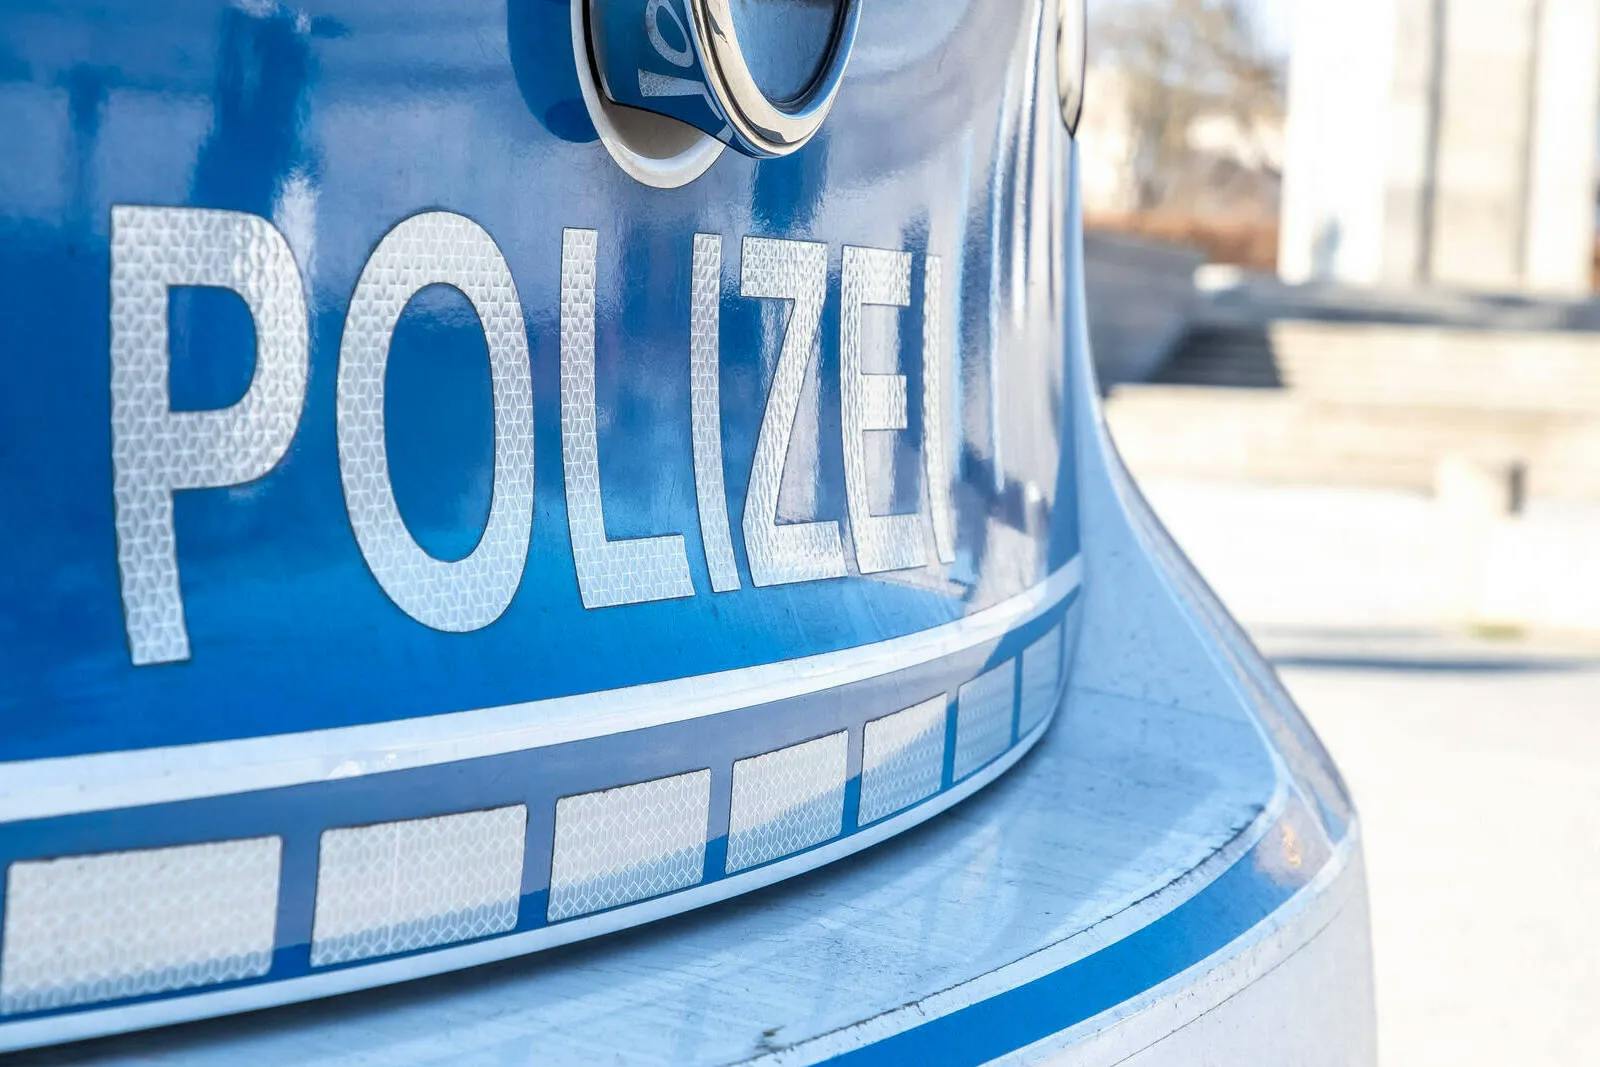 Clan blockiert Abschiebung in Berlin: Polizei setzt Spezialkräfte ein